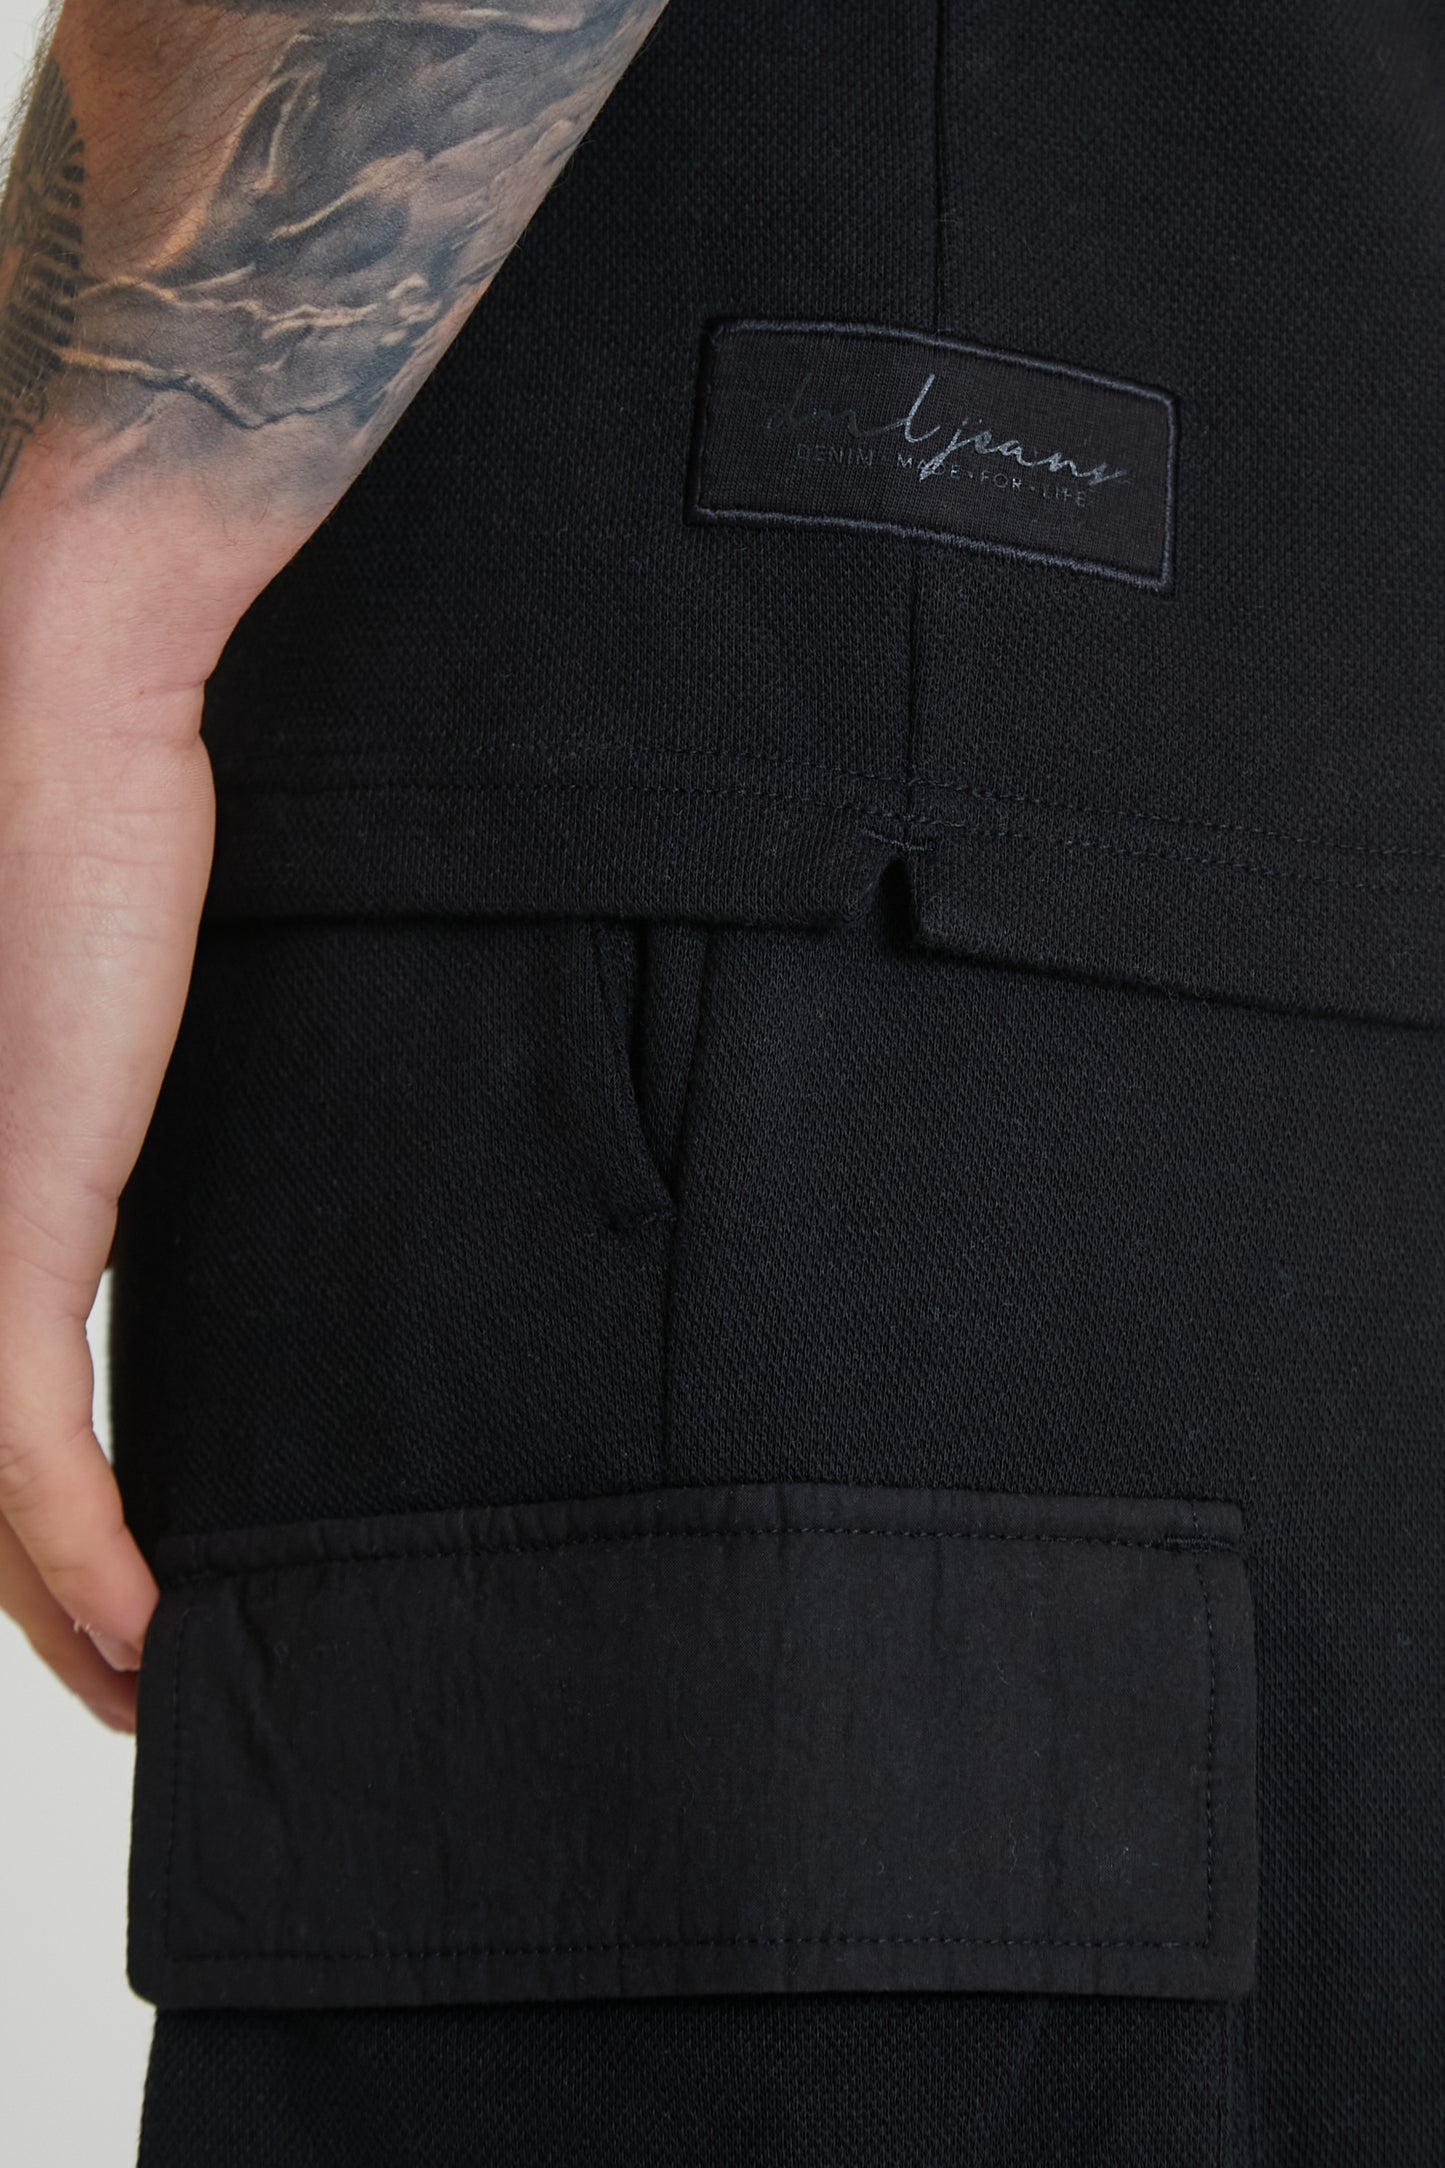 ULTRA Premium pique contrast panel top in BLACK - DML Jeans 